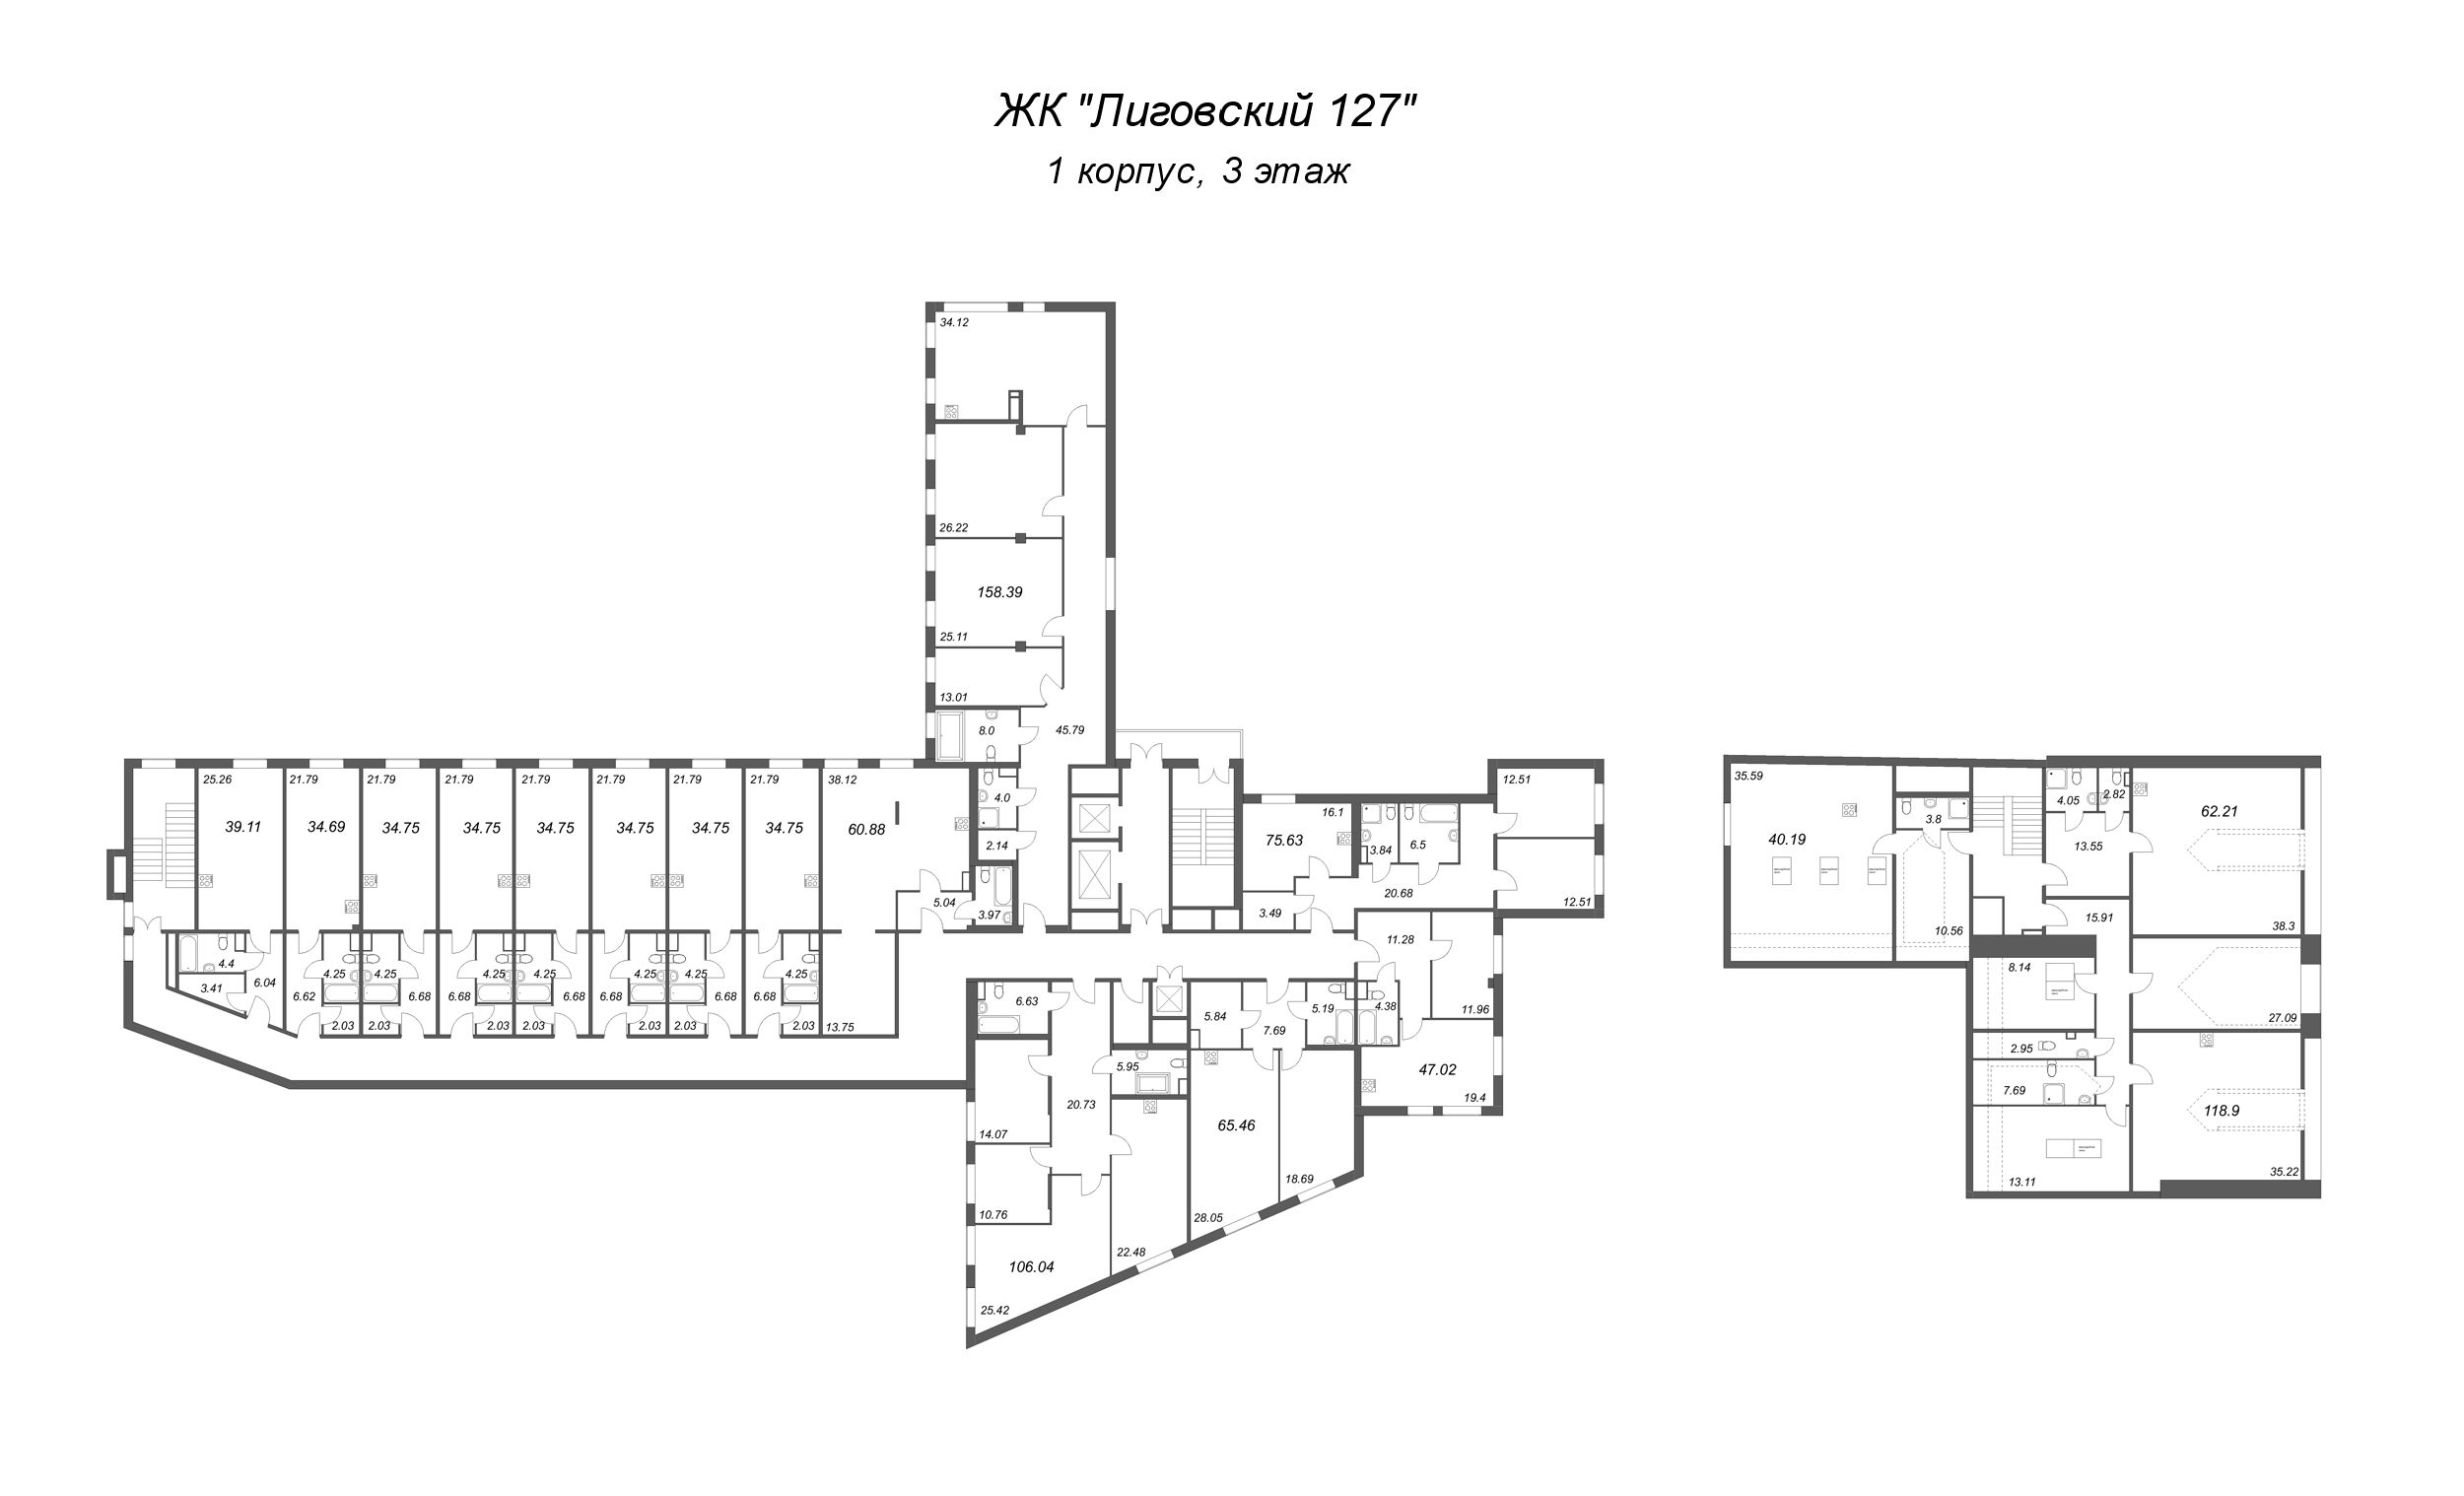 Квартира-студия, 34.19 м² в ЖК "Лиговский 127" - планировка этажа